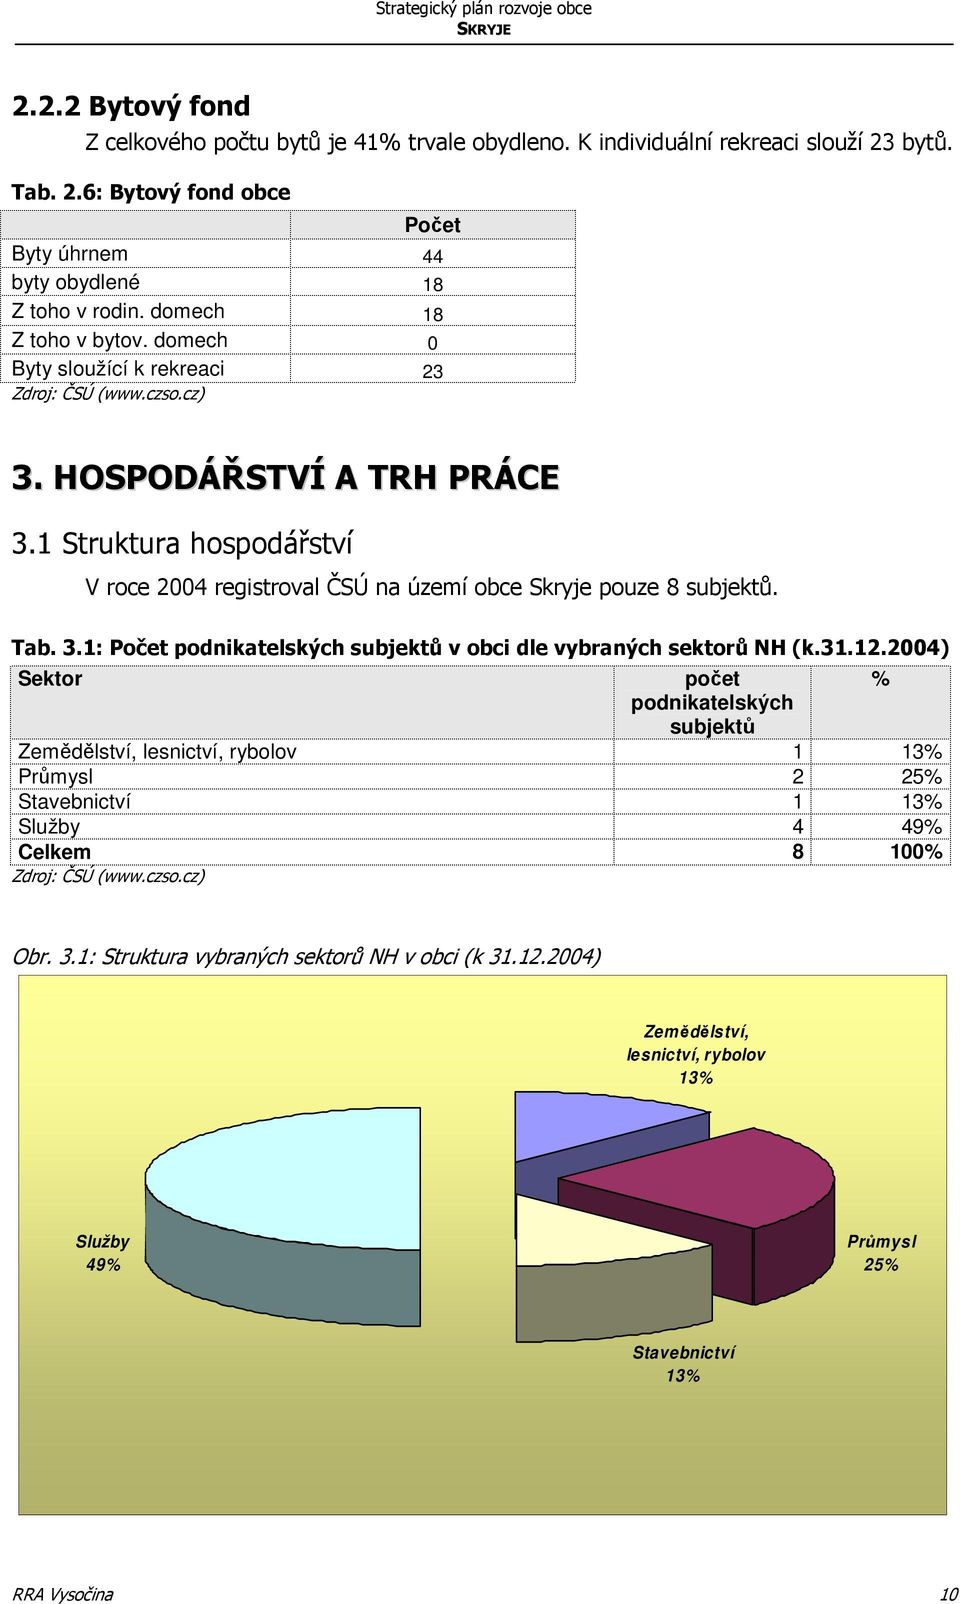 1 Struktura hospodářství V roce 2004 registroval ČSÚ na území obce Skryje pouze 8 subjektů. Tab. 3.1: Počet podnikatelských subjektů v obci dle vybraných sektorů NH (k.31.12.